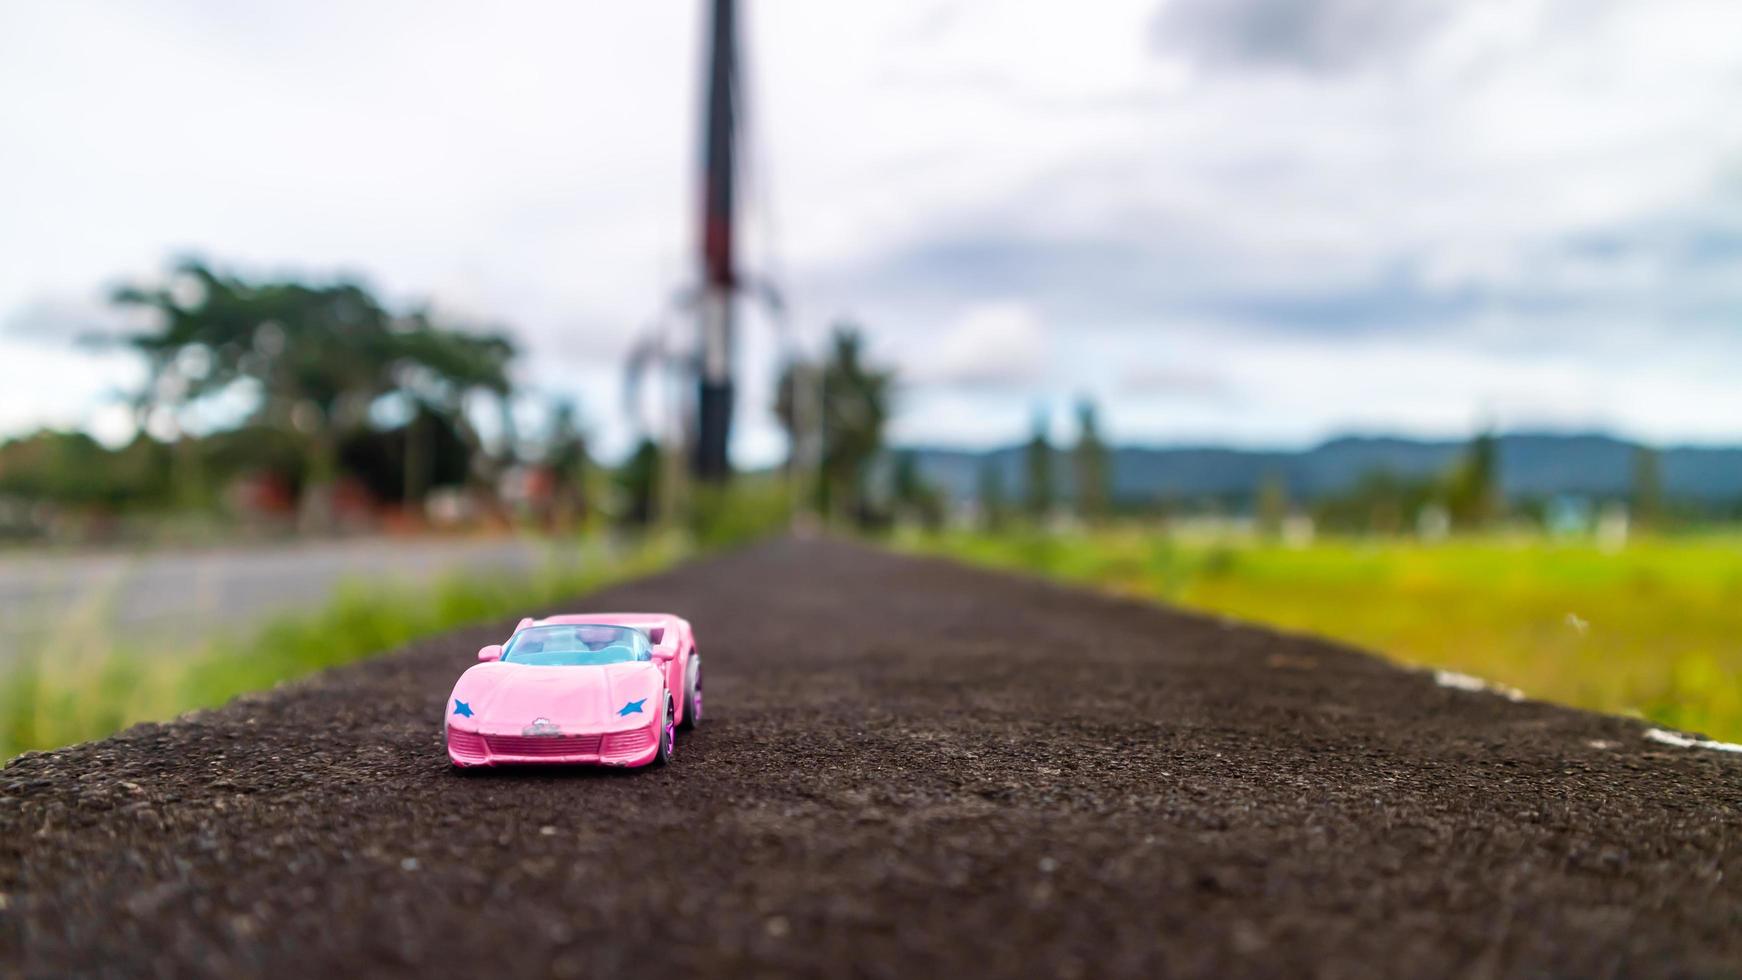 minahasa, indonésia, janeiro de 2023, carro de brinquedo no campo de arroz foto